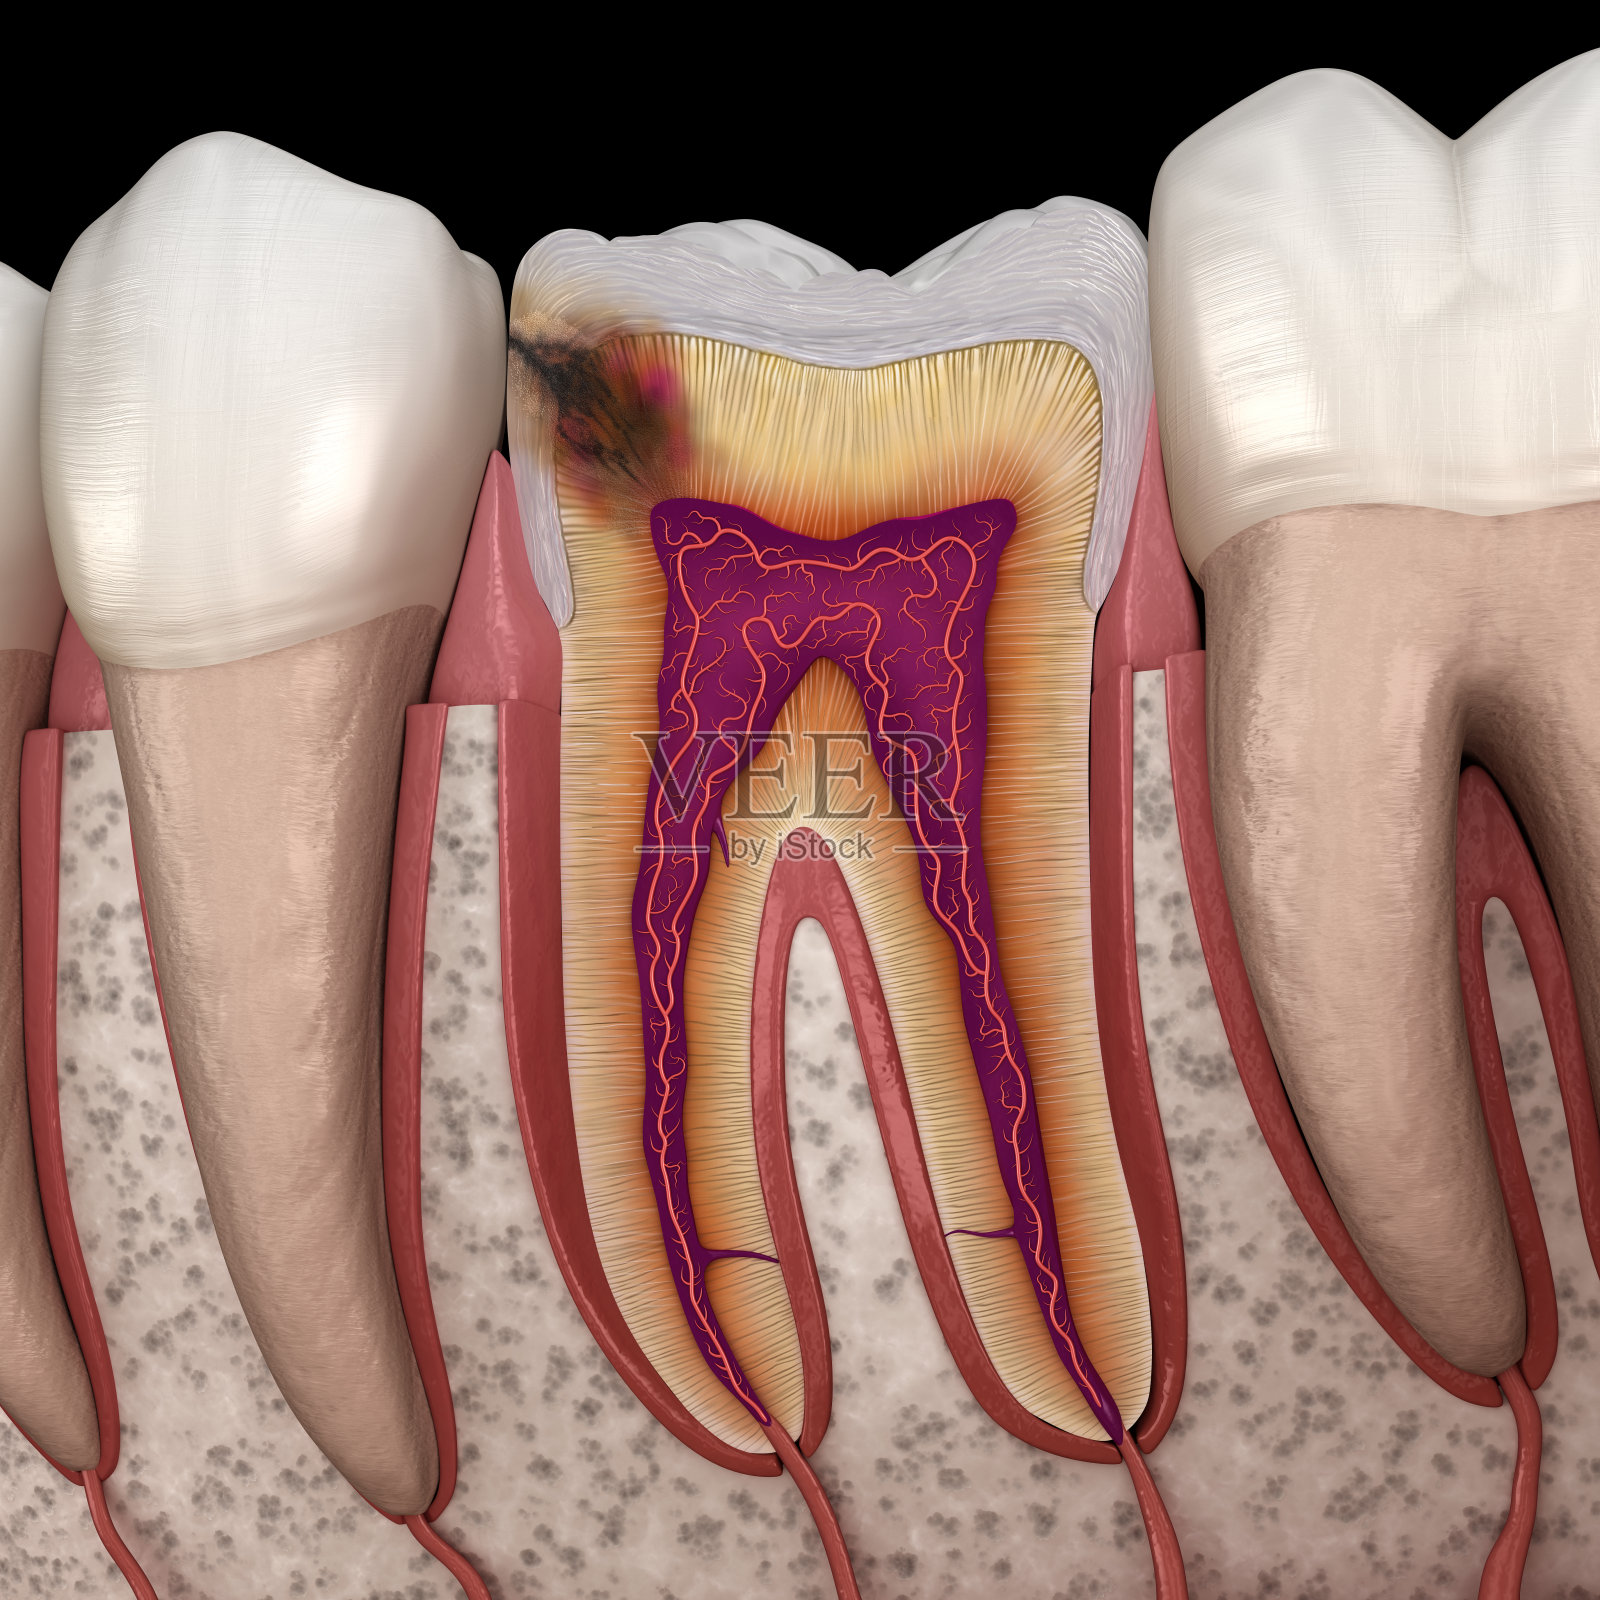 得了龋齿，什么情况可以直接补牙，什么情况又需要做根管治疗？ - 知乎